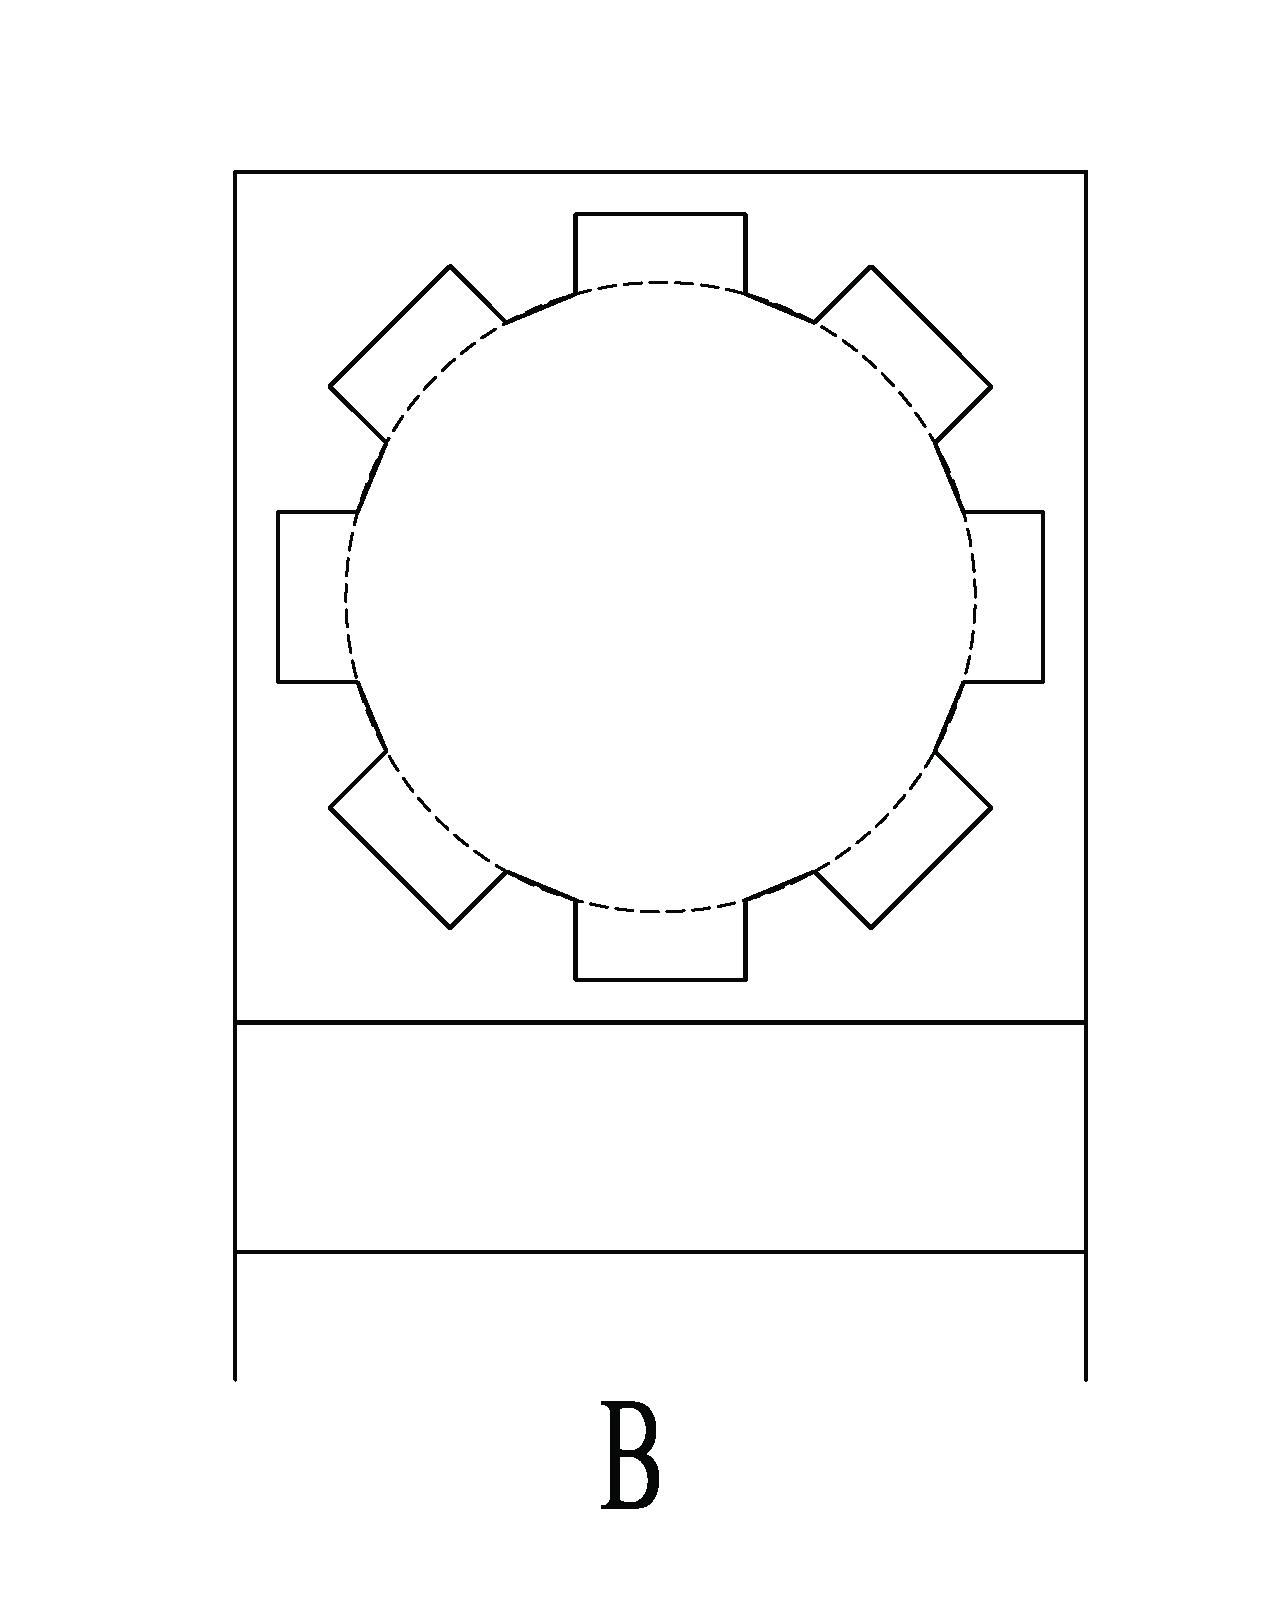 Schema 2-'B' type schematic planning